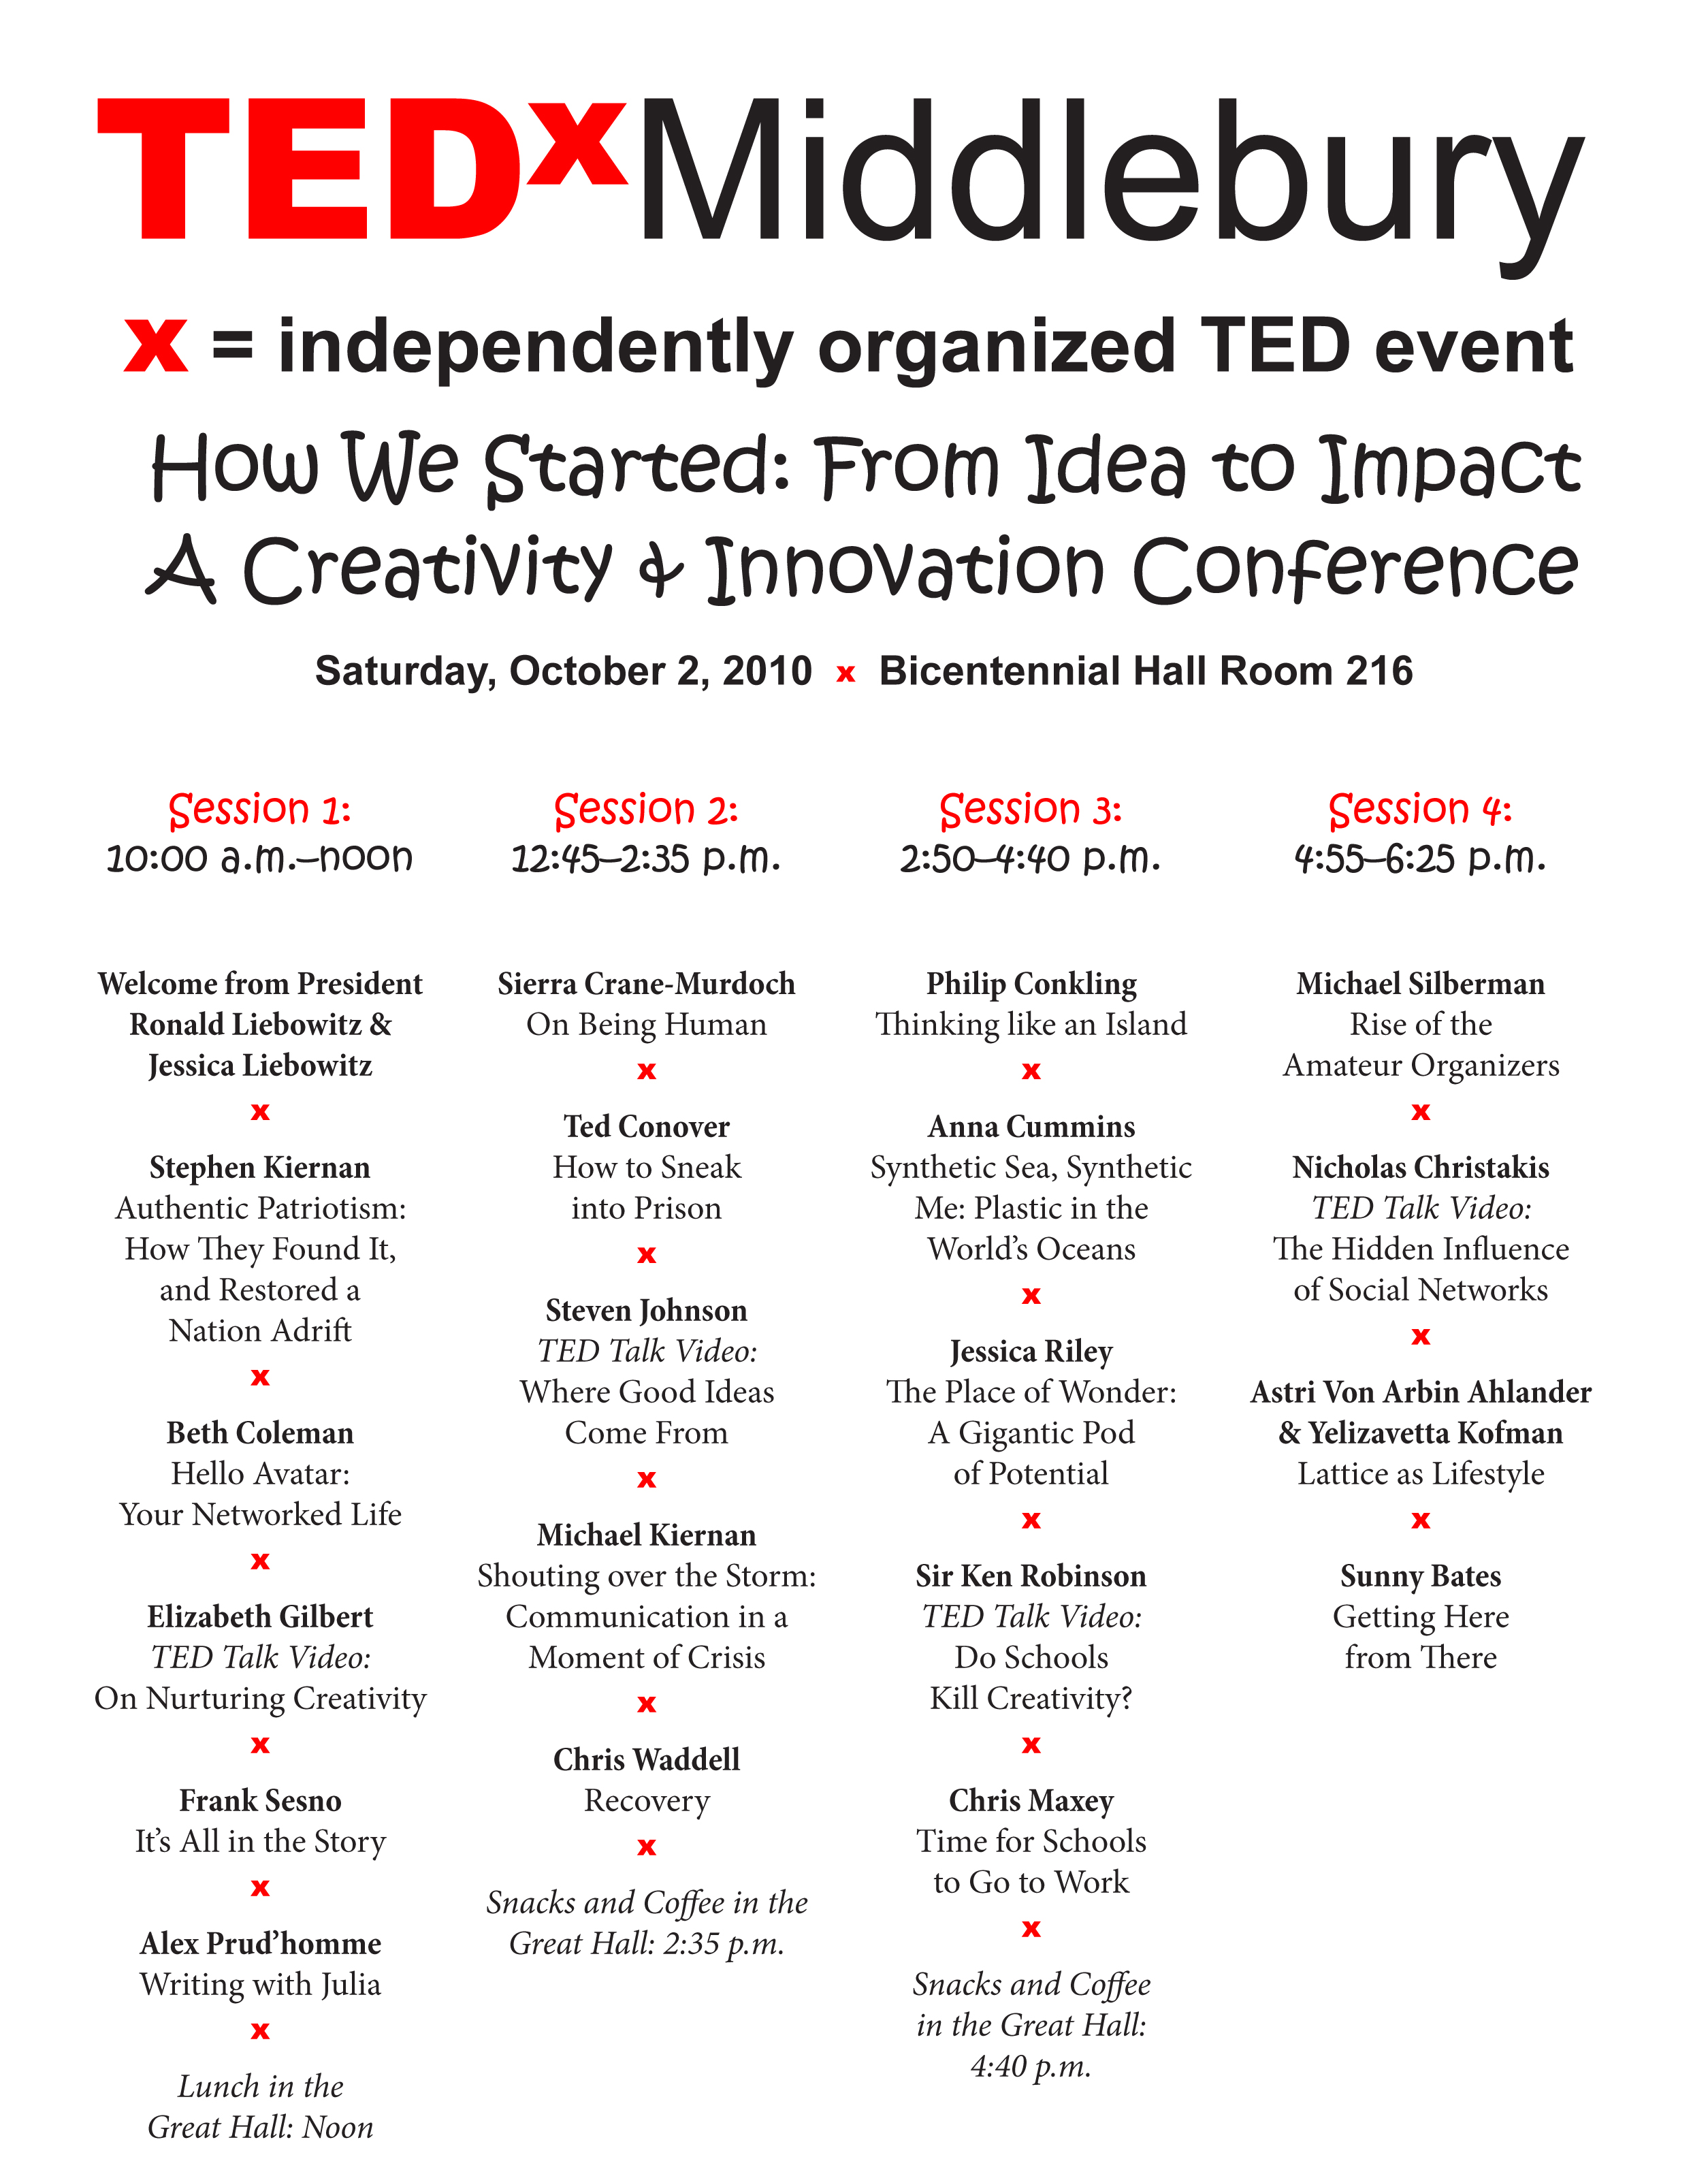 TEDxMiddlebury Program